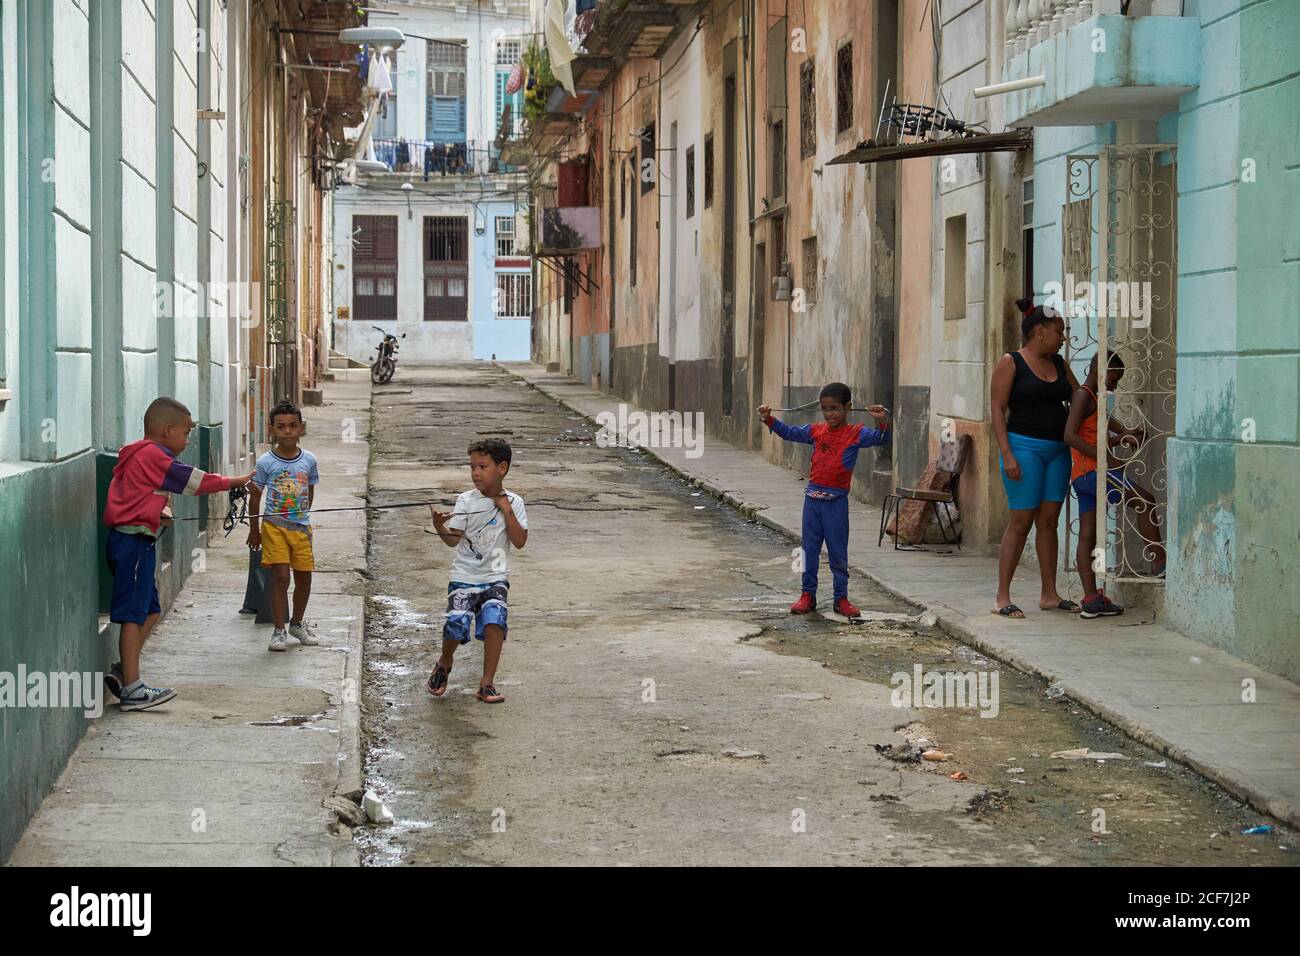 KUBA - 28. DEZEMBER 2018: Kleine schwarze Jungs haben Spaß auf engen Straßen zwischen alten Gebäuden Stockfoto